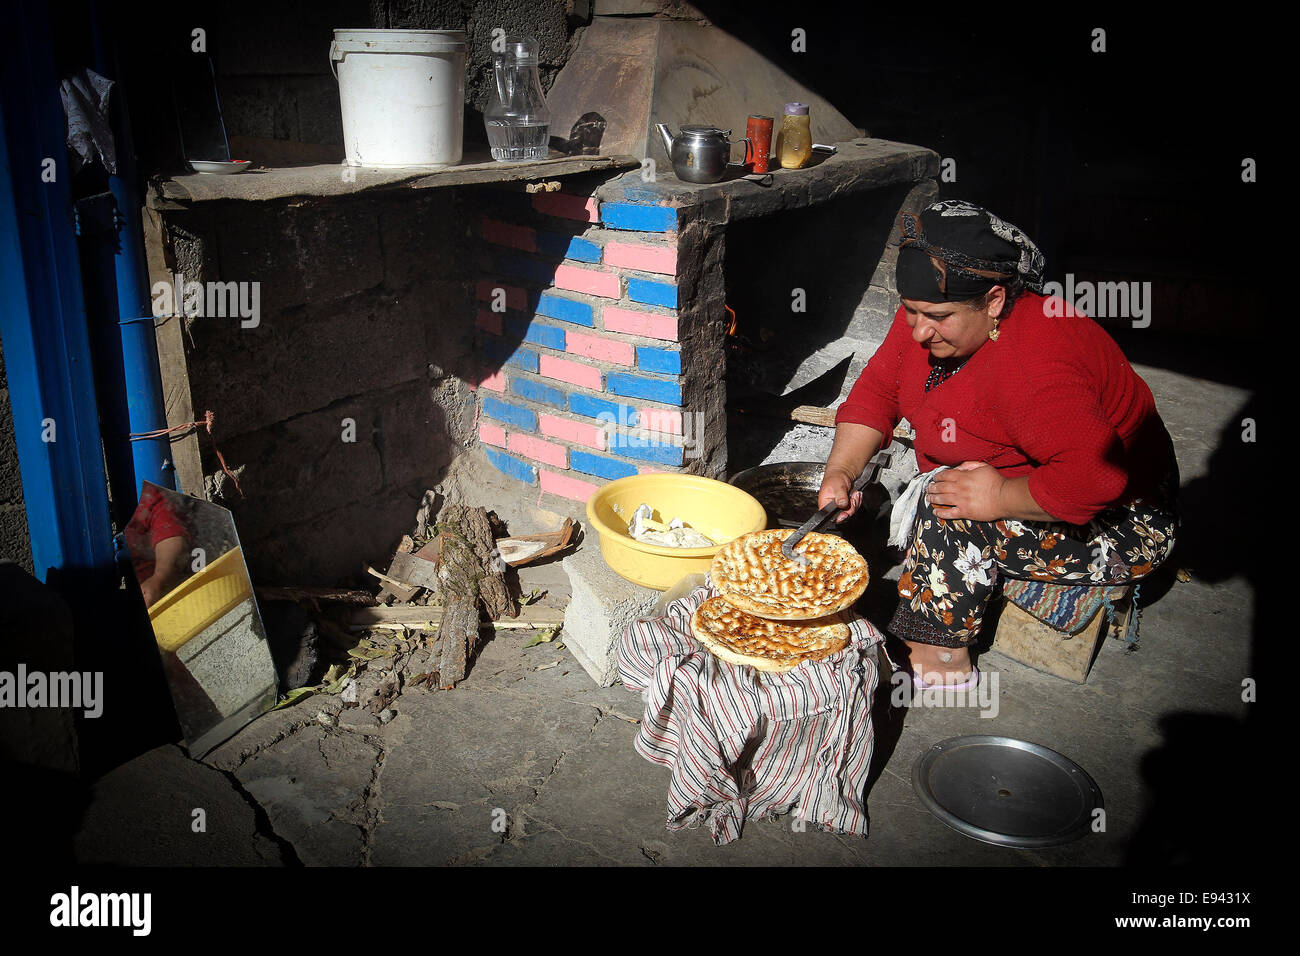 Province de Mazandaran, Iran. 18 Oct, 2014. Cuisson du pain dans un petit village de province de Mazandaran, le nord de l'Iran, le 18 octobre 2014. © Xinhua/Alamy Live News Banque D'Images